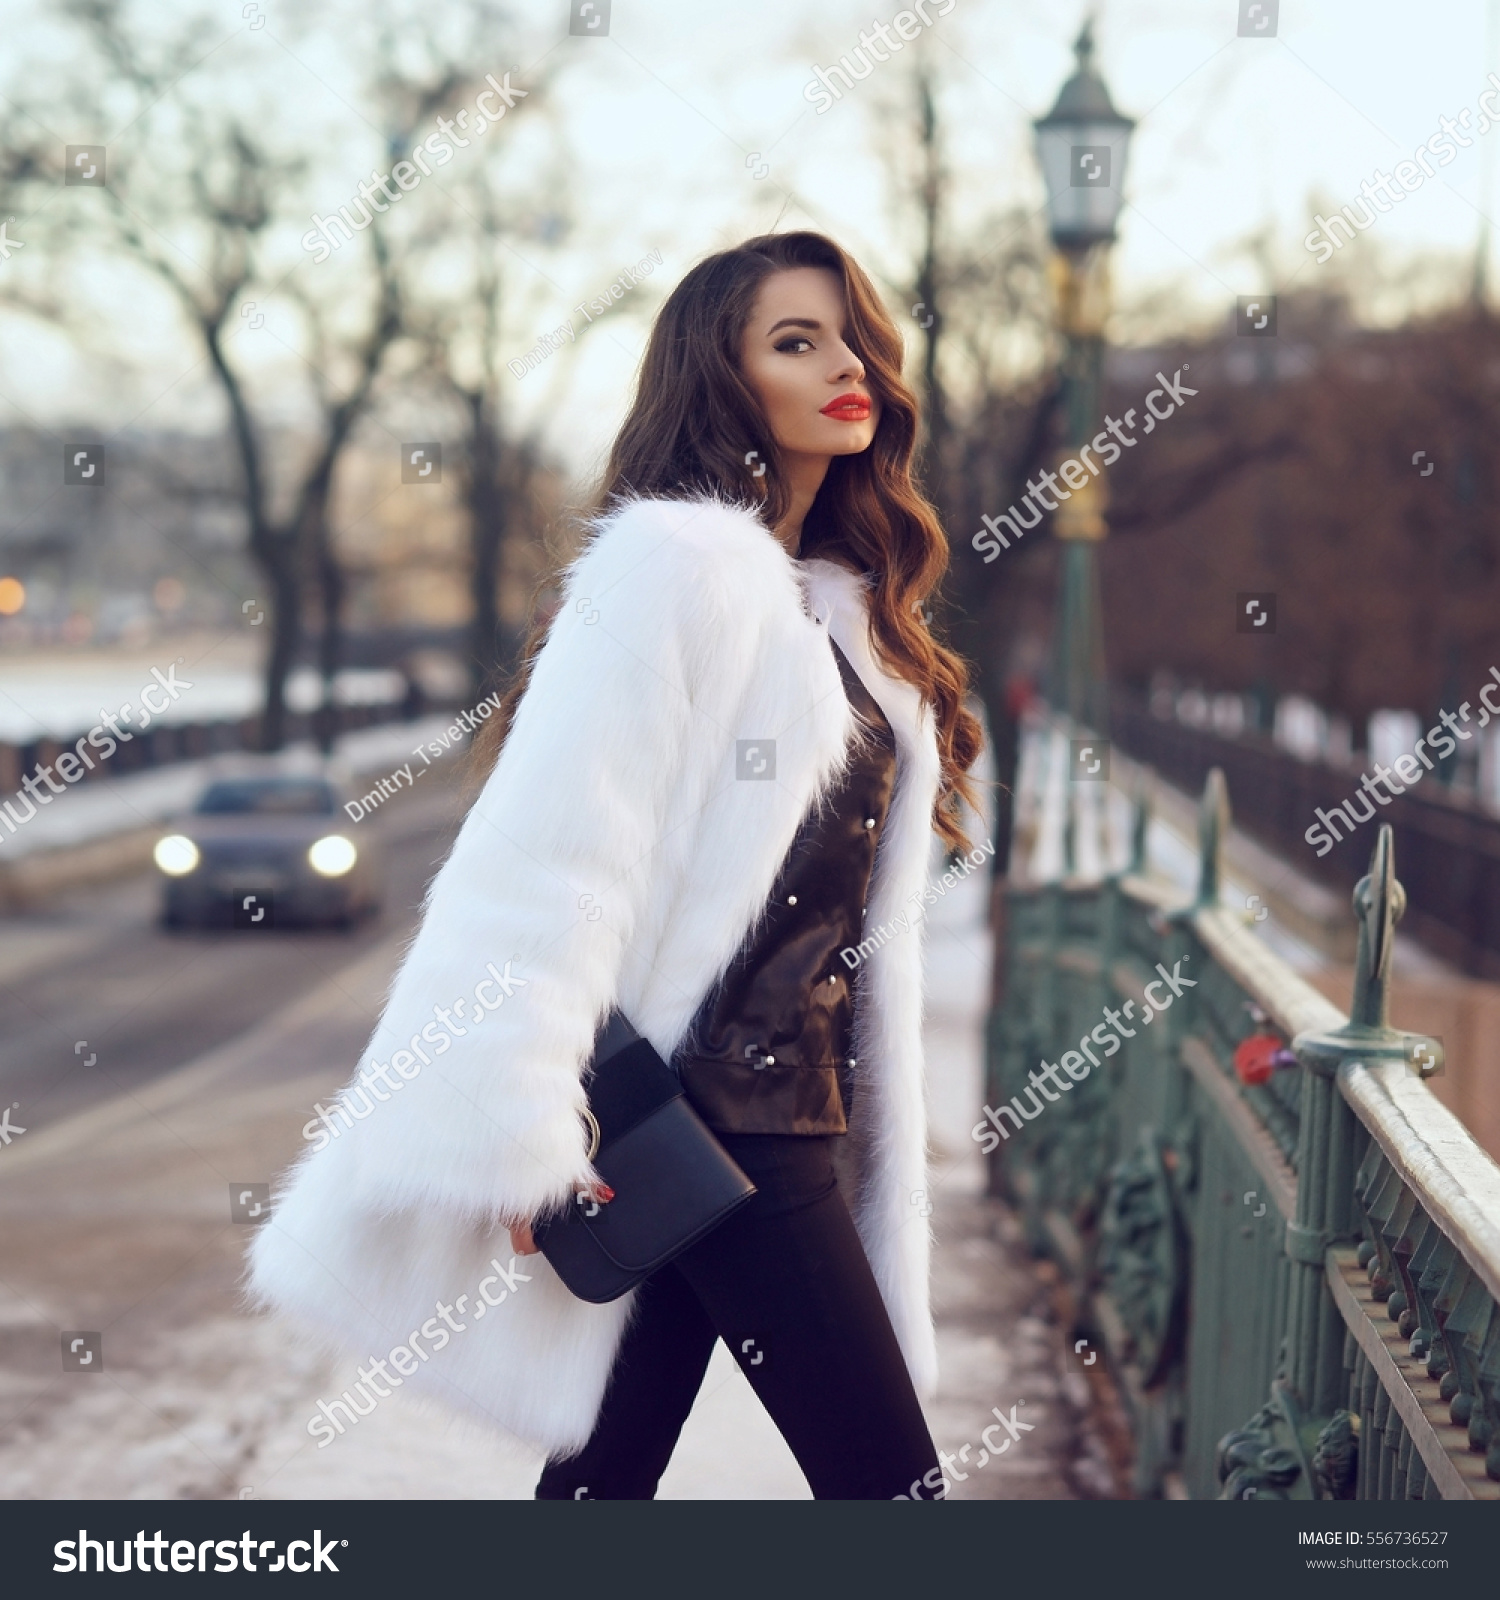 Young Beautiful Stylish Woman Walking Down Stock Photo (Royalty Free ...